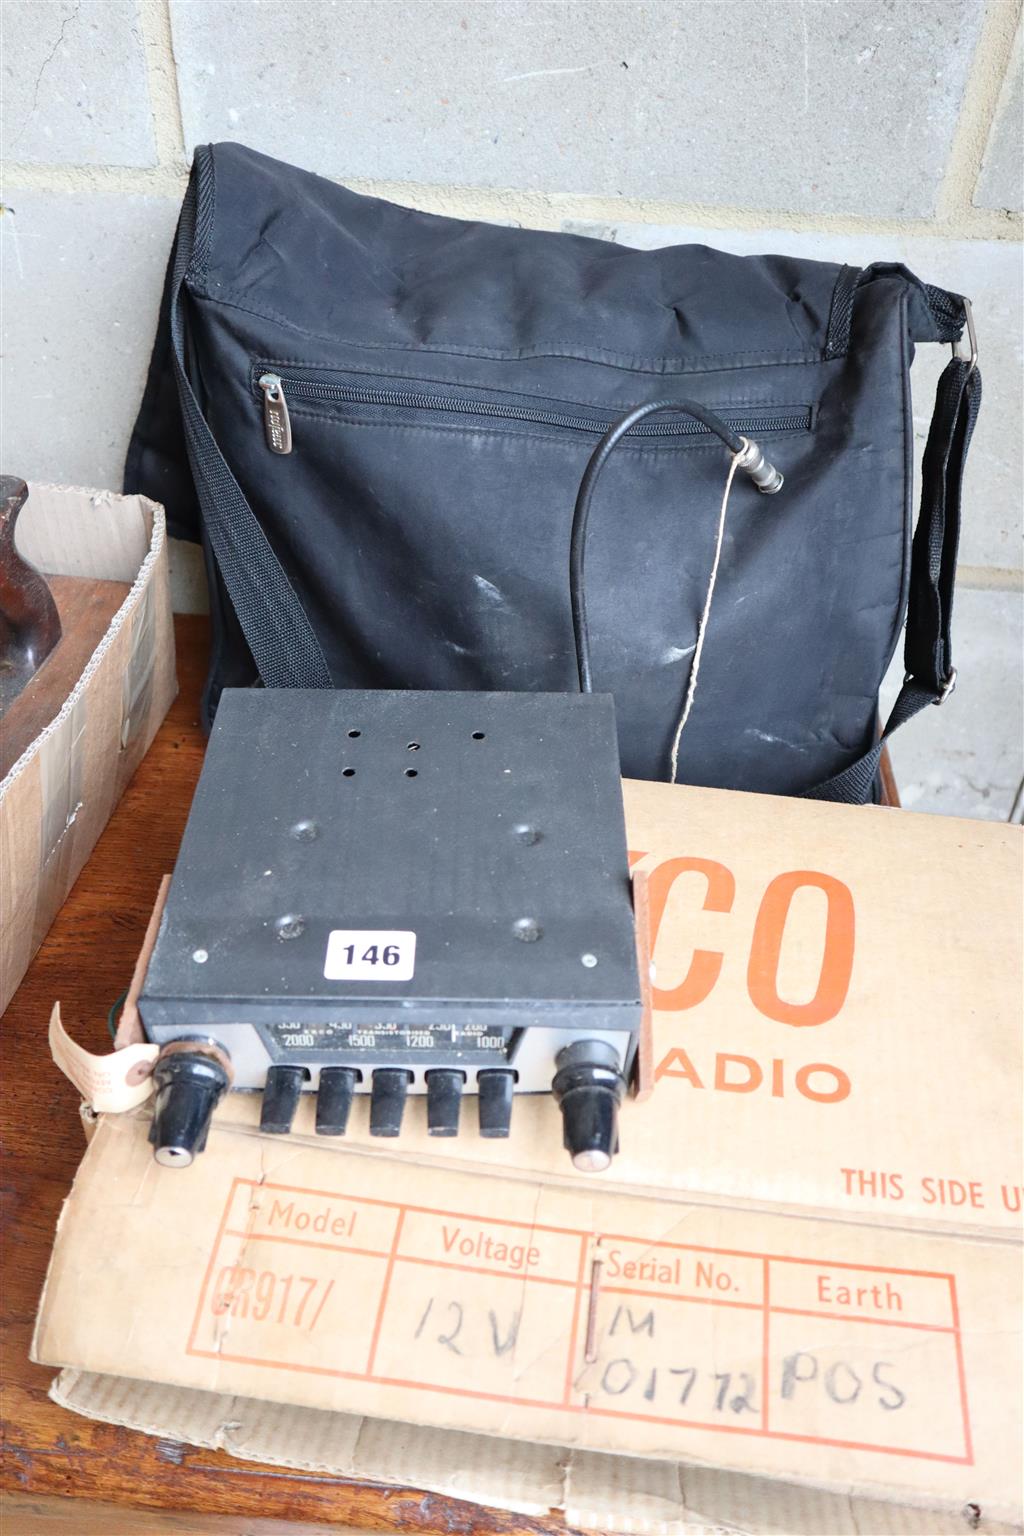 Unused EKCO car radio, boxed, circa 1960